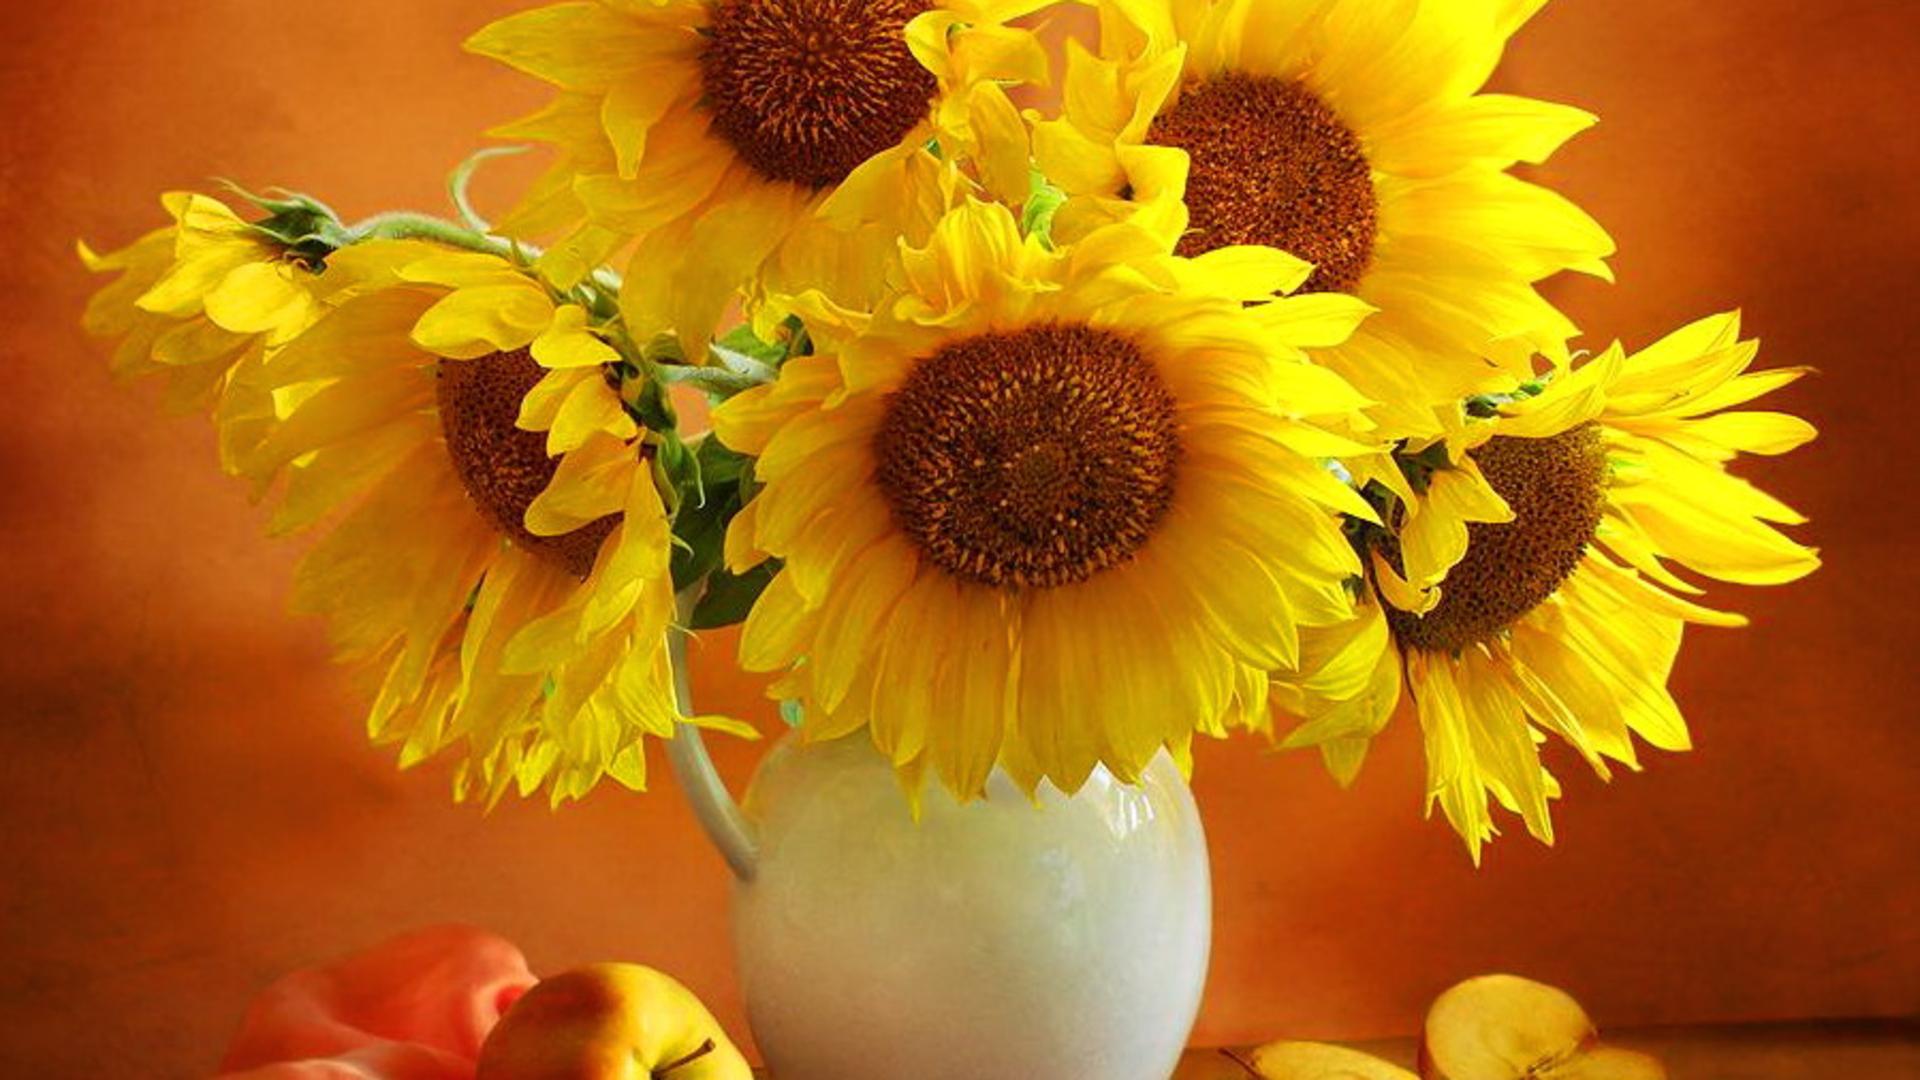 Yellow Flowers Desktop Wallpaper - Wallpaper, High Definition, High  Quality, Widescreen